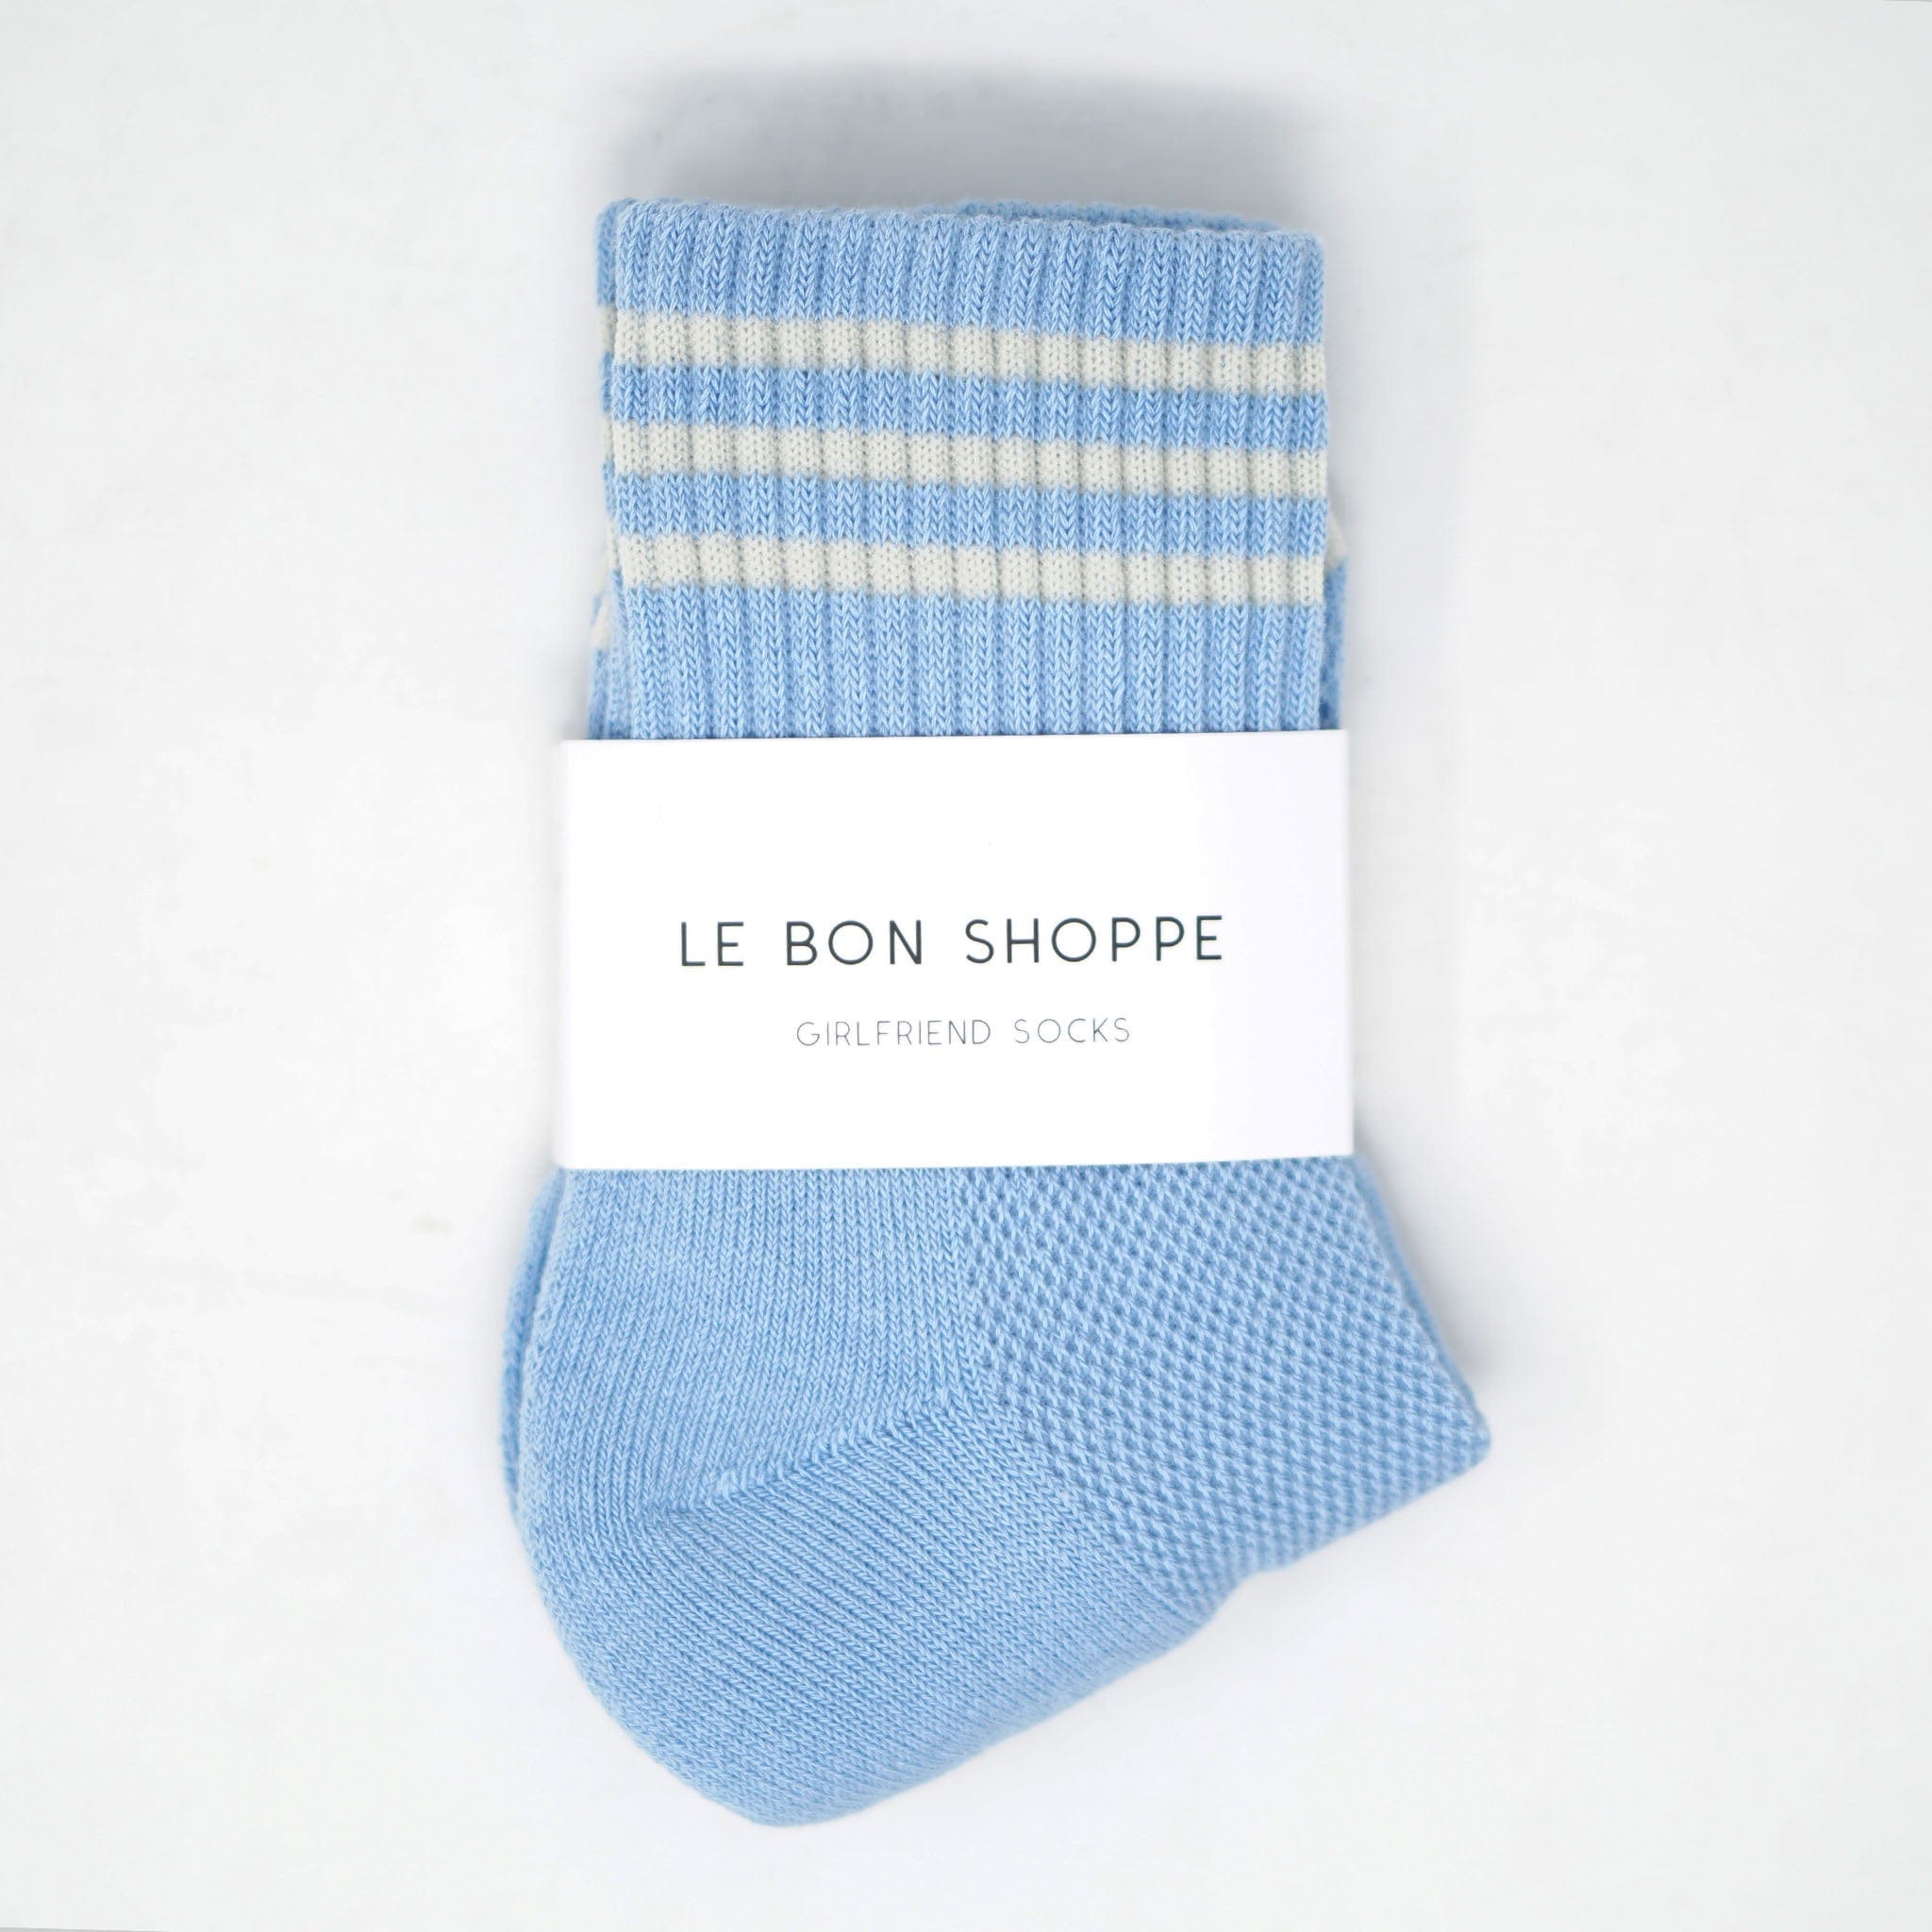 Le Bon Shoppe Girlfriend Socks Parisian Blue Socks  - ZIGZAG Footwear